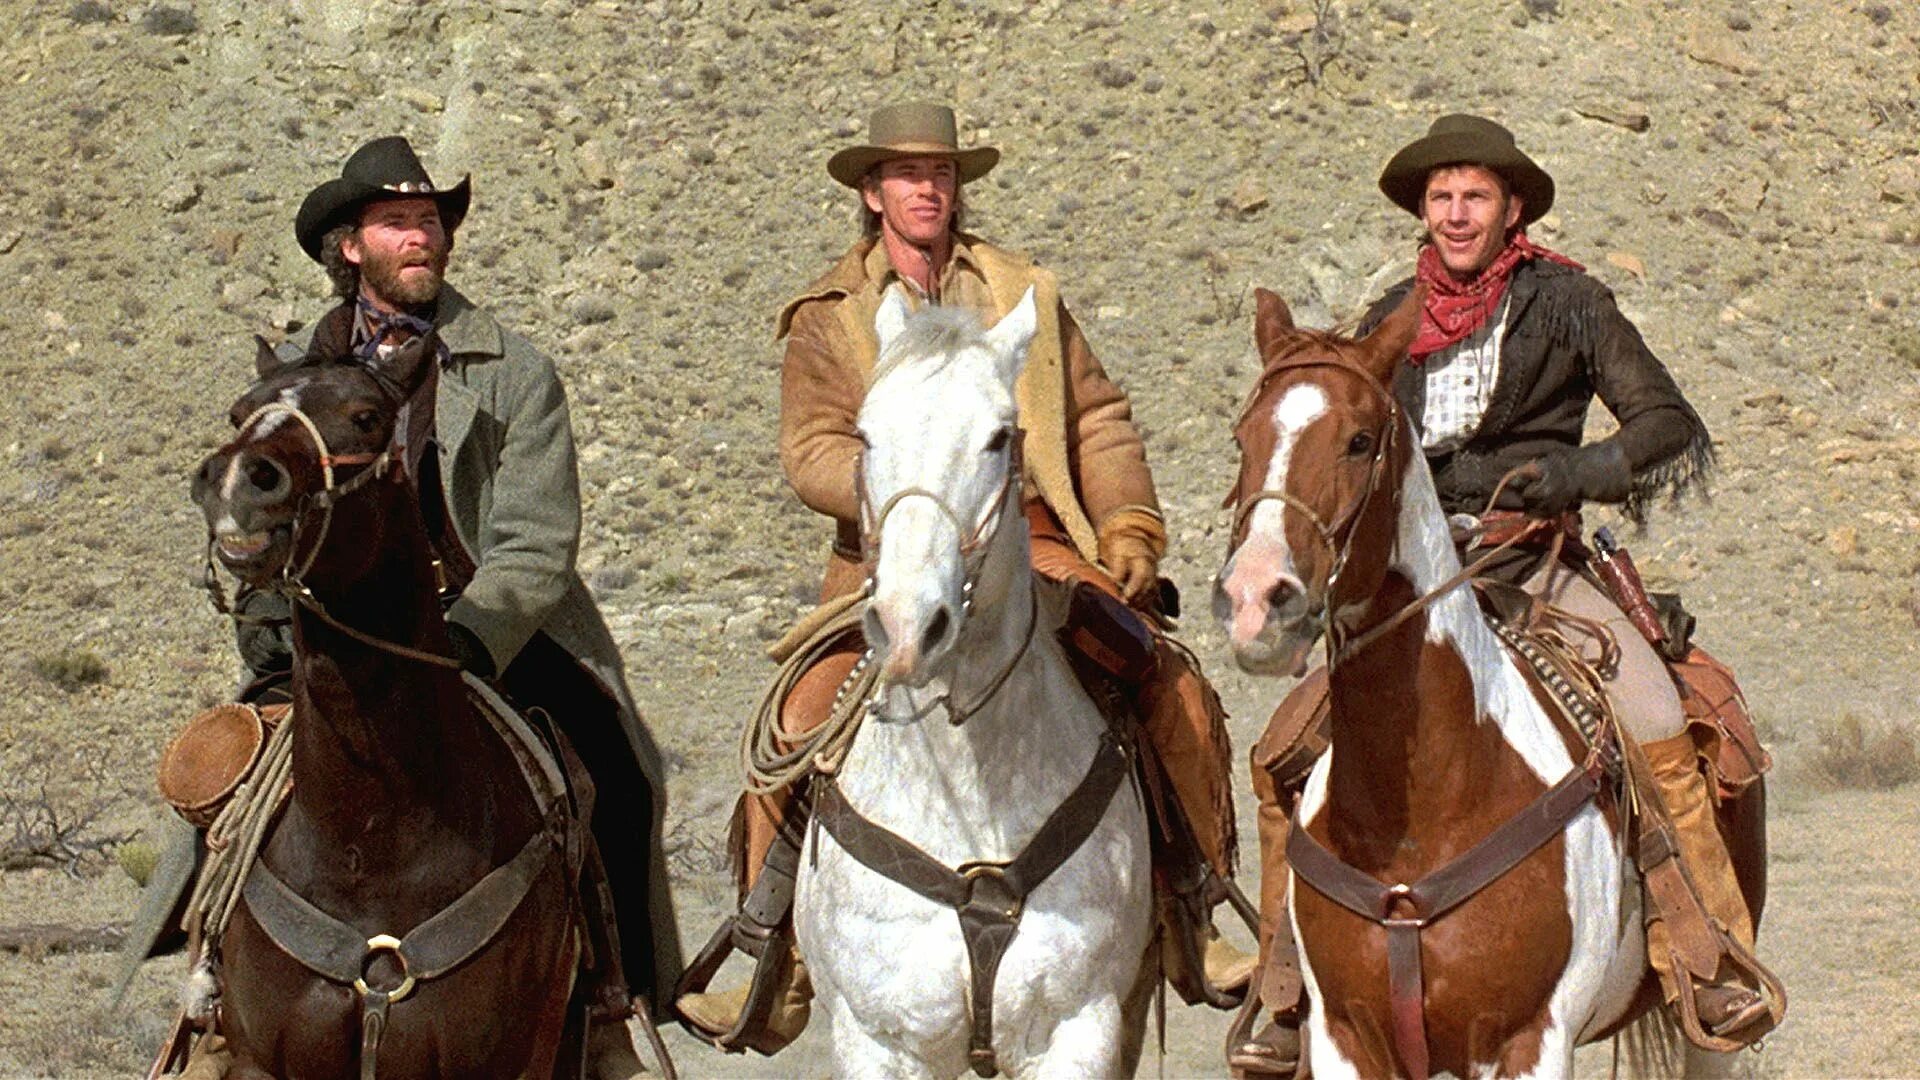 Клинт Иствуд на лошади. Кевин Костнер 1985. Клинт Иствуд ковбой на лошади.